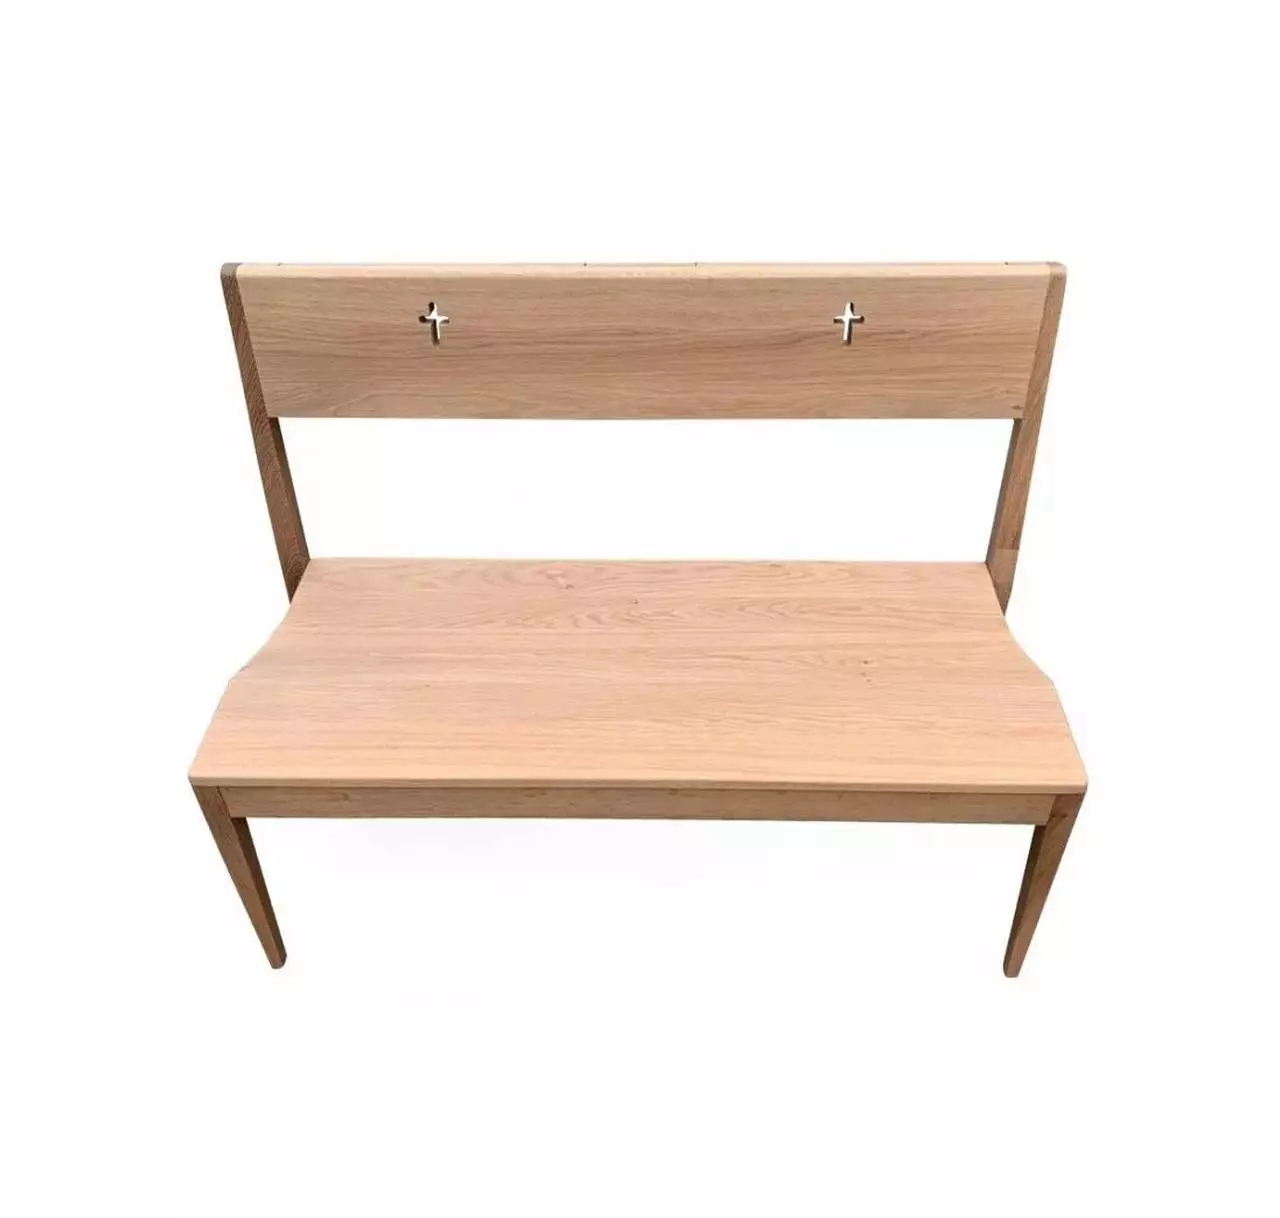 Dřevěná kostelní lavice v klasickém minimalistickém designu